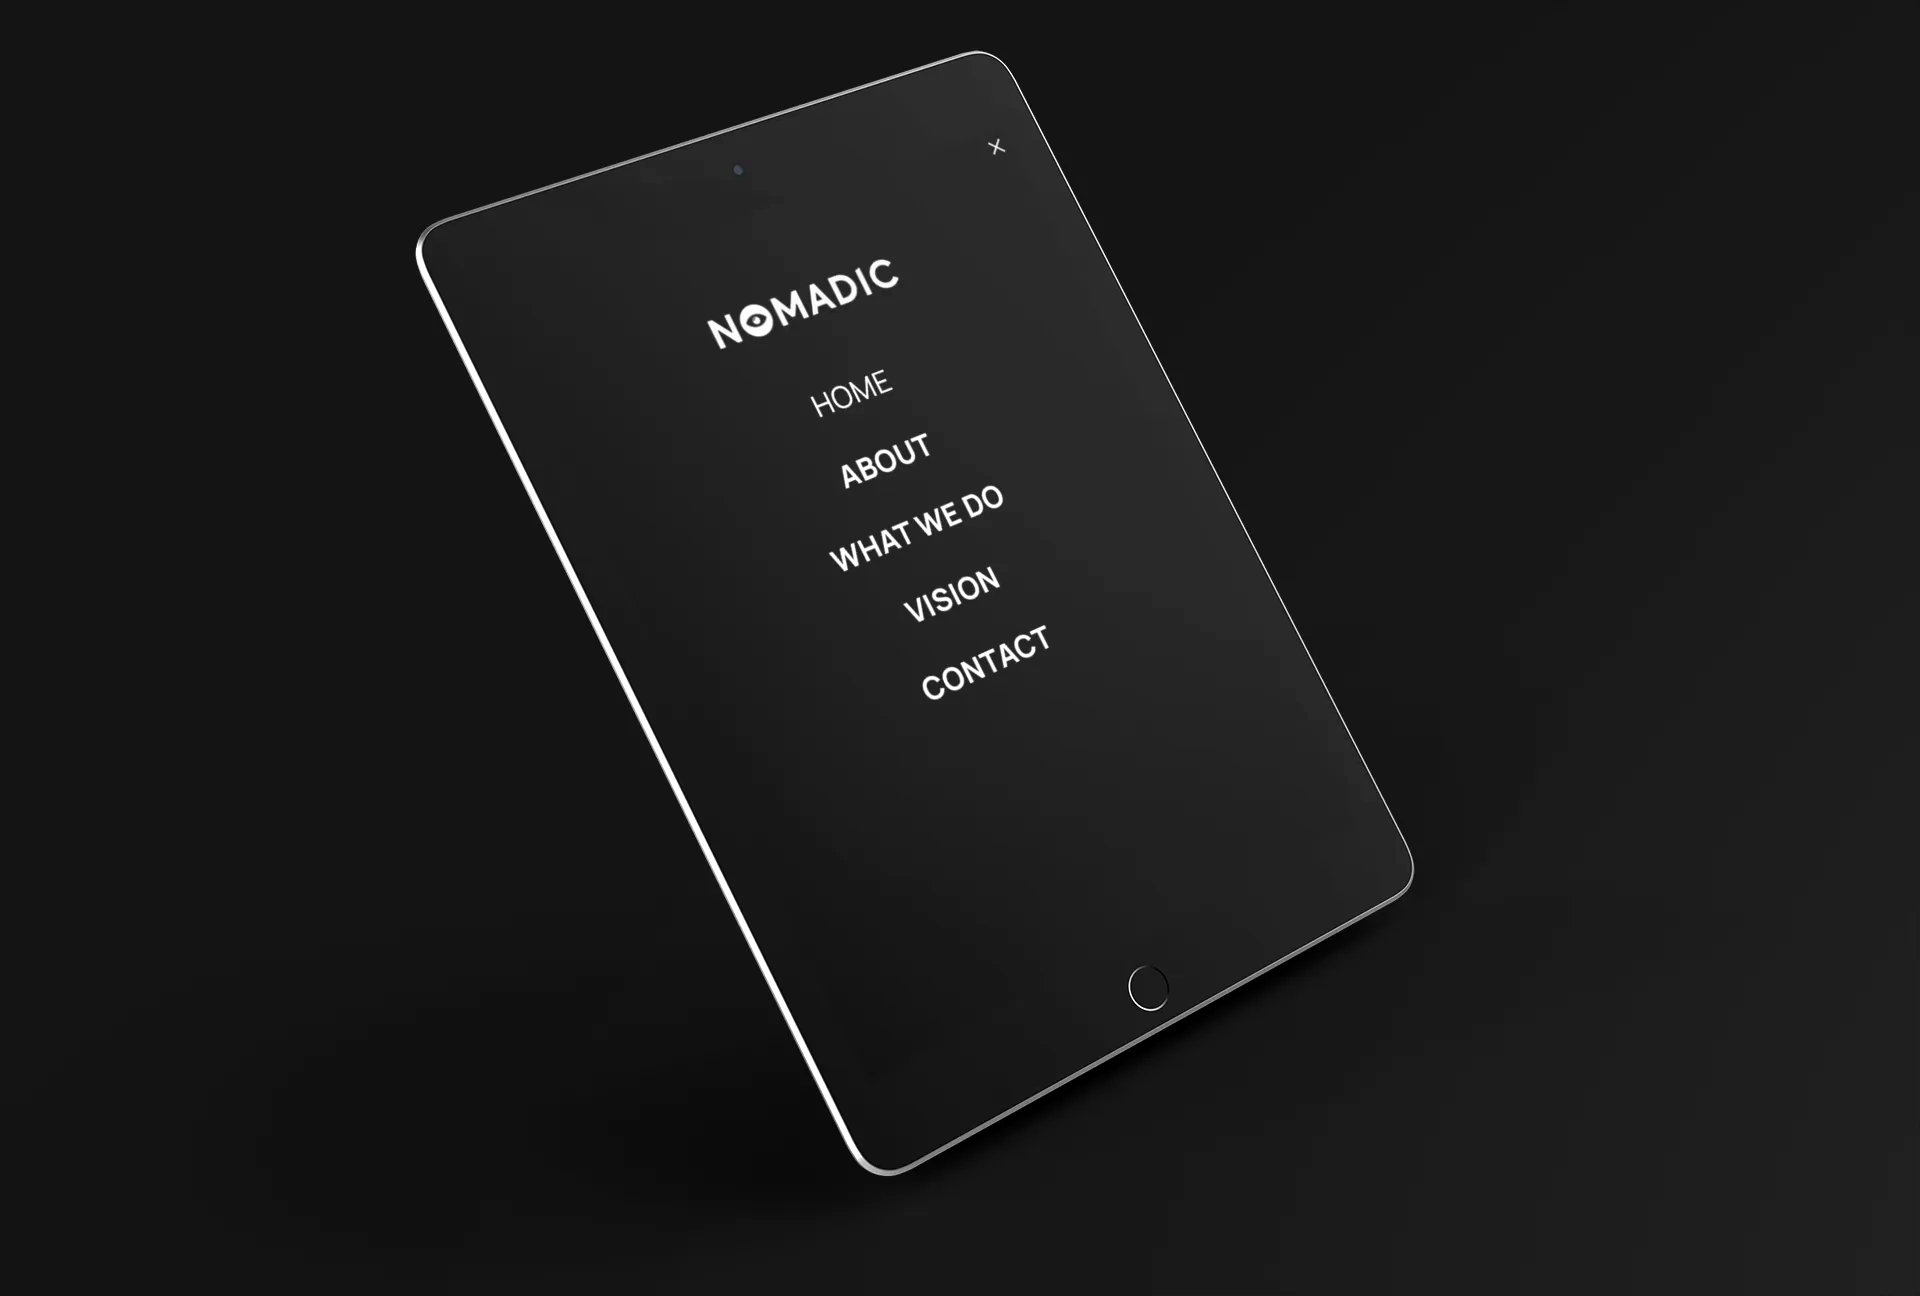 A black tablet displays Nomadic Vision website navigation menu